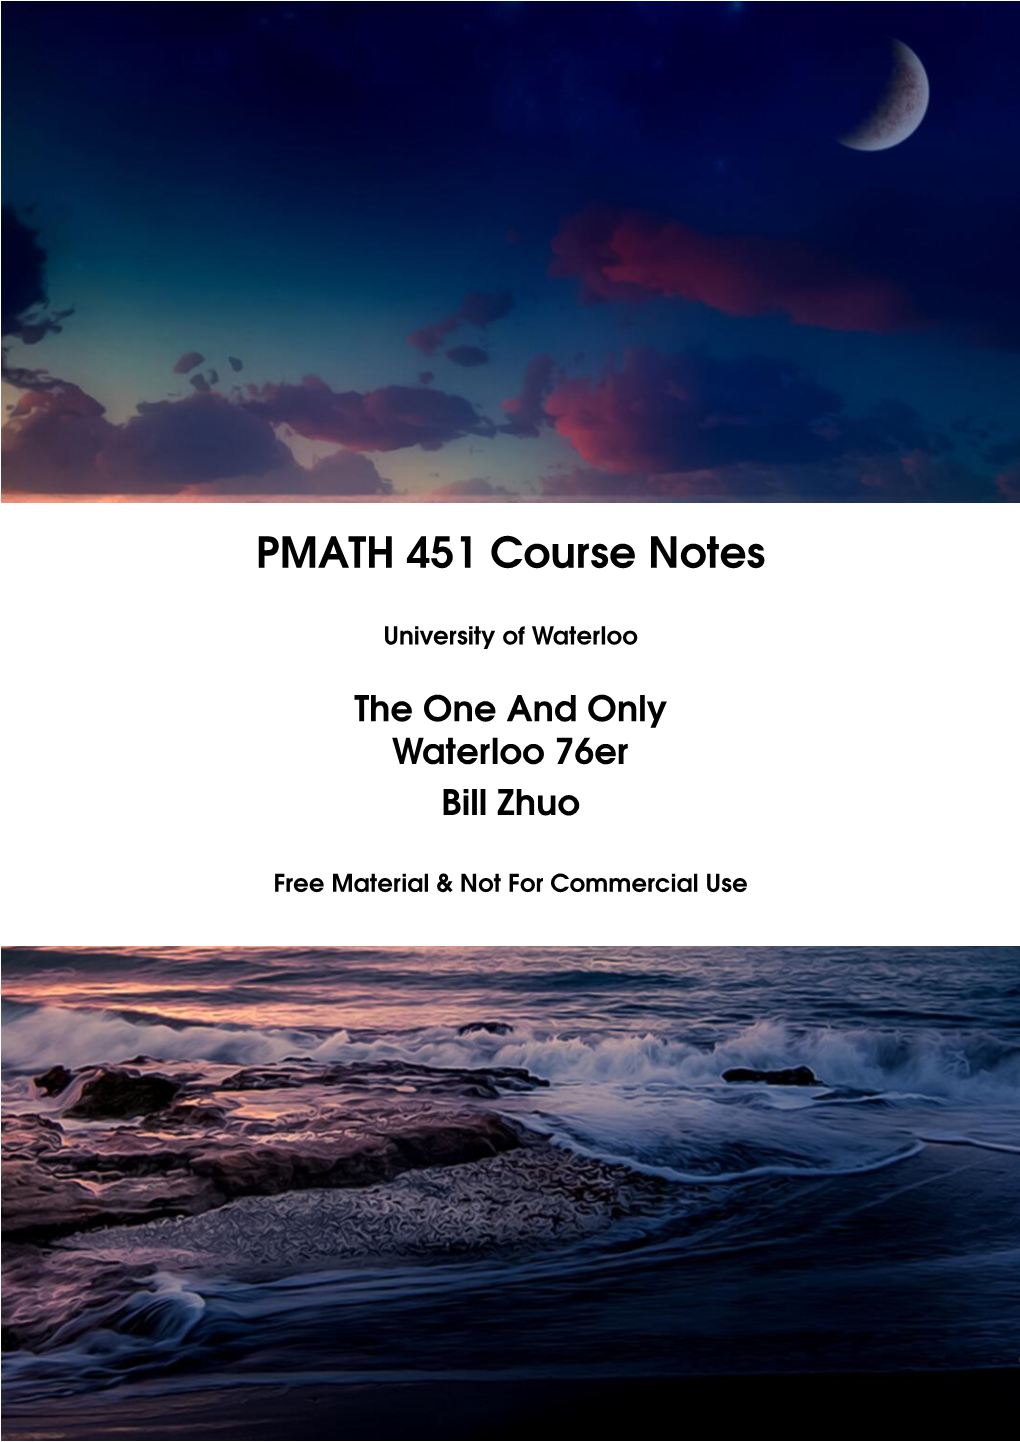 PMATH 451 Course Notes